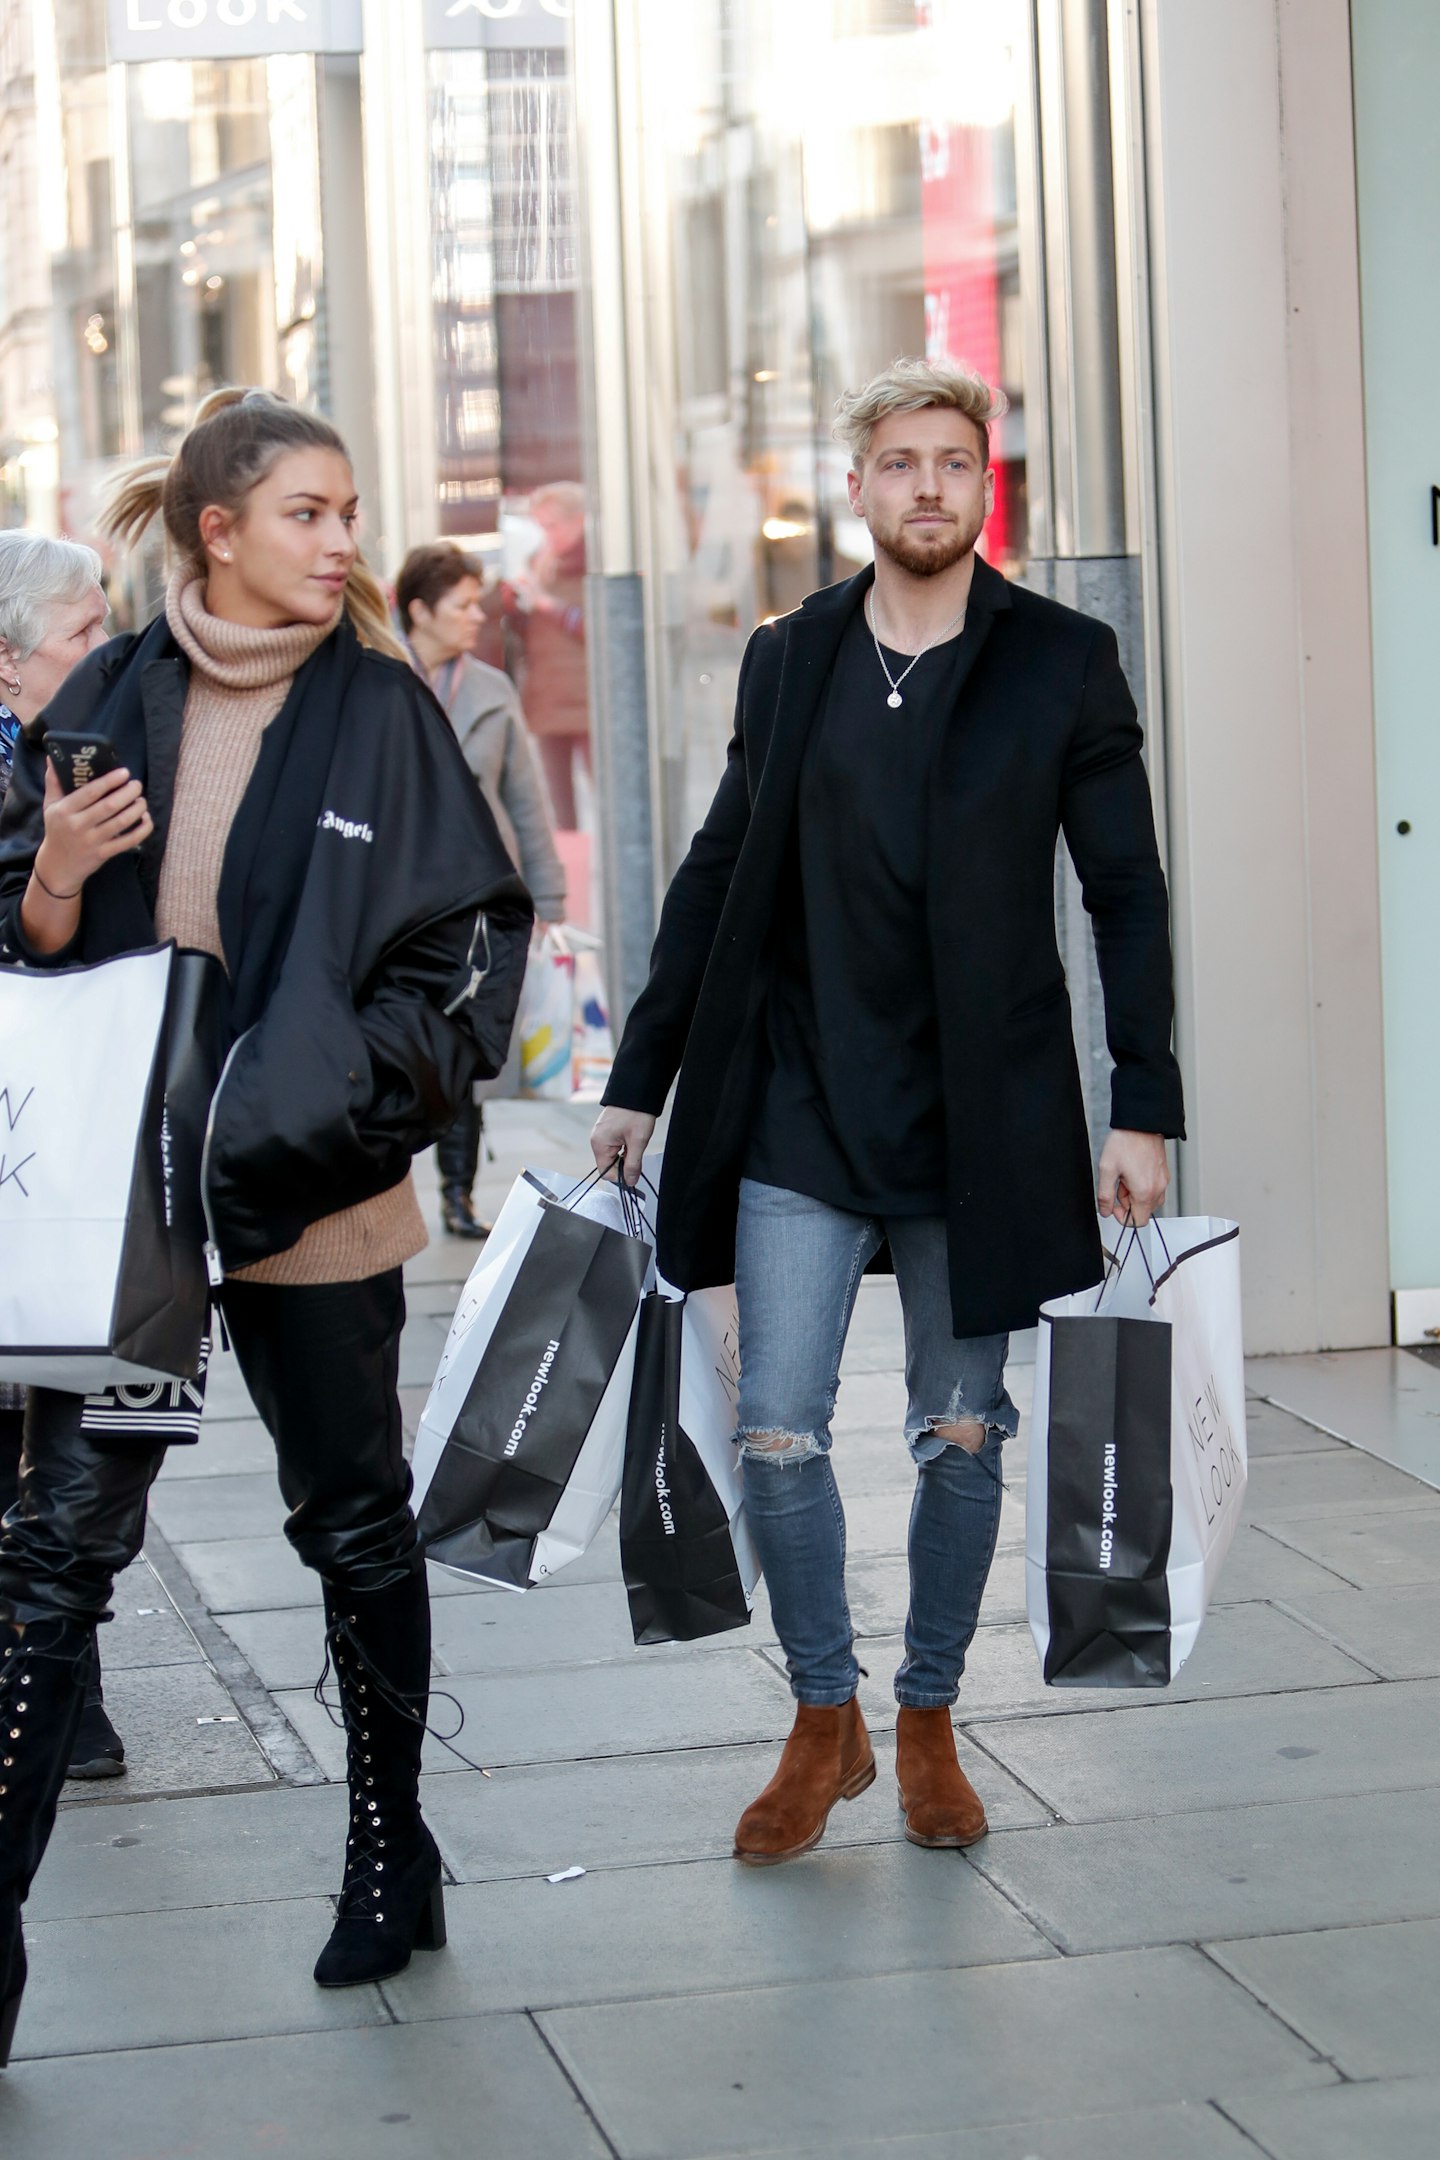 Zara McDermott and Sam Thompson shopping in New Look Oxford Street, 4 December 2019